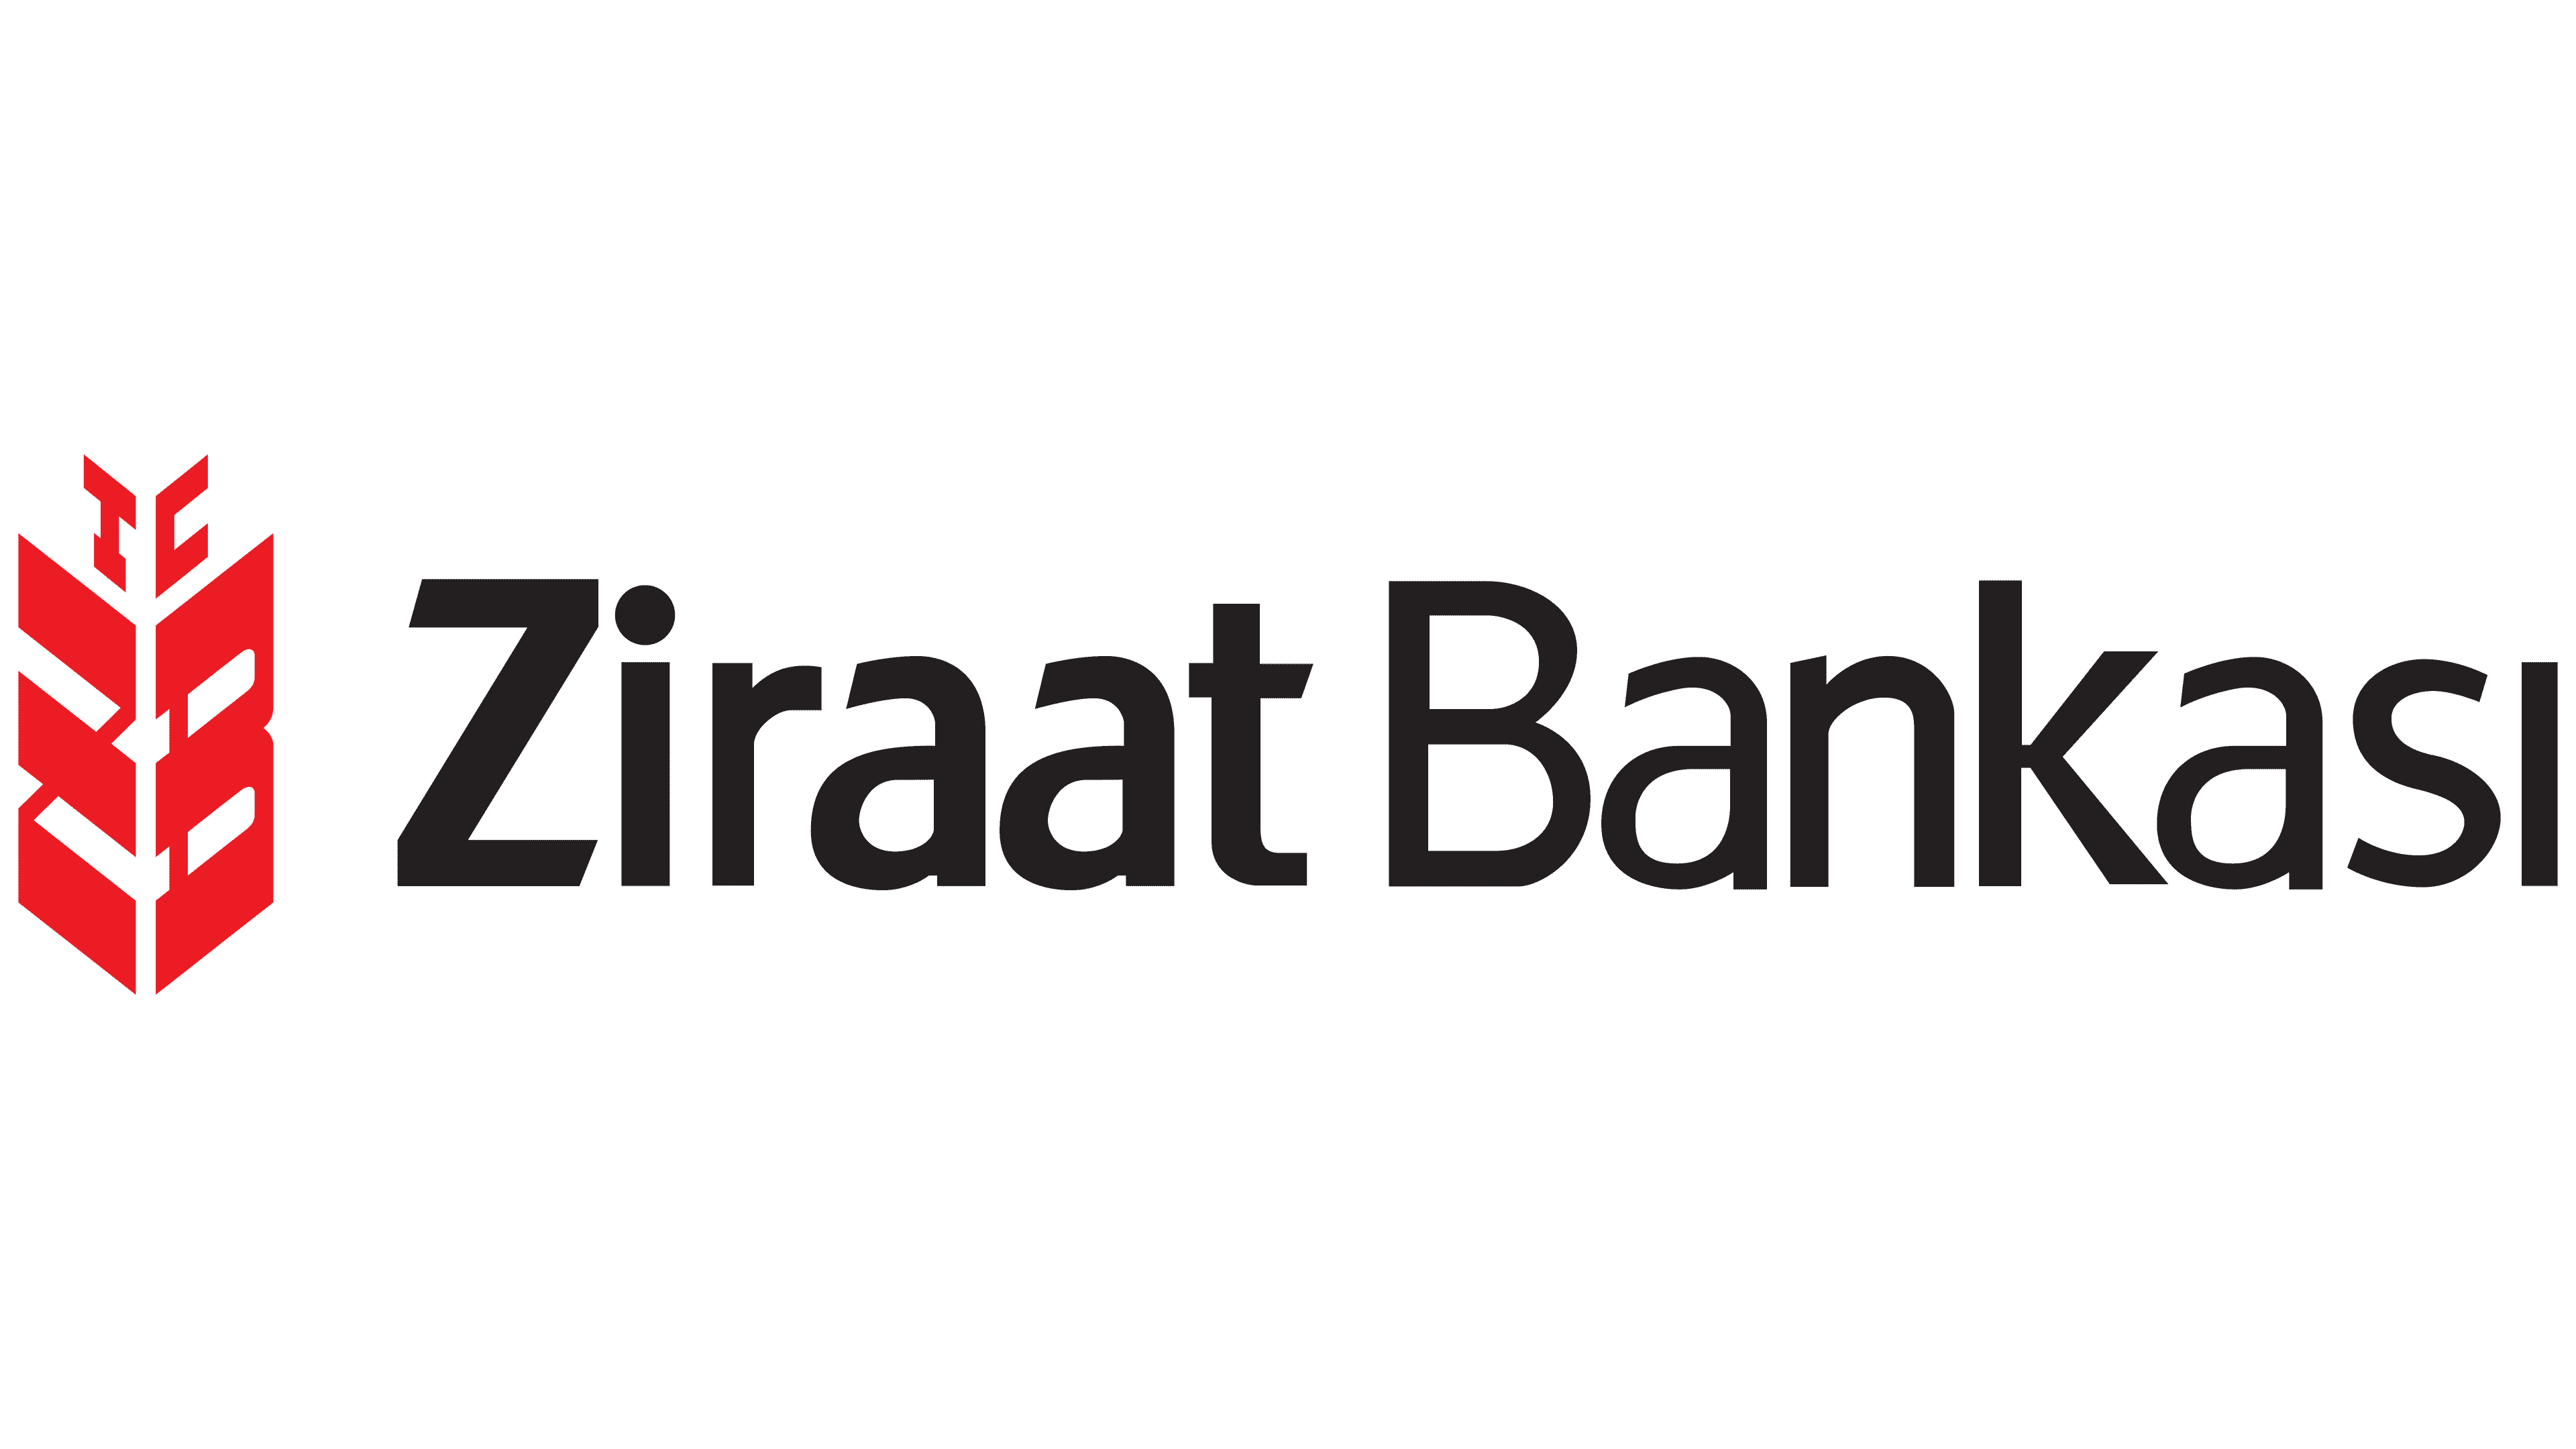 T me aged bank. Ziraat. Банк лого. Ziraat Bank logo. Turk Bank лого.